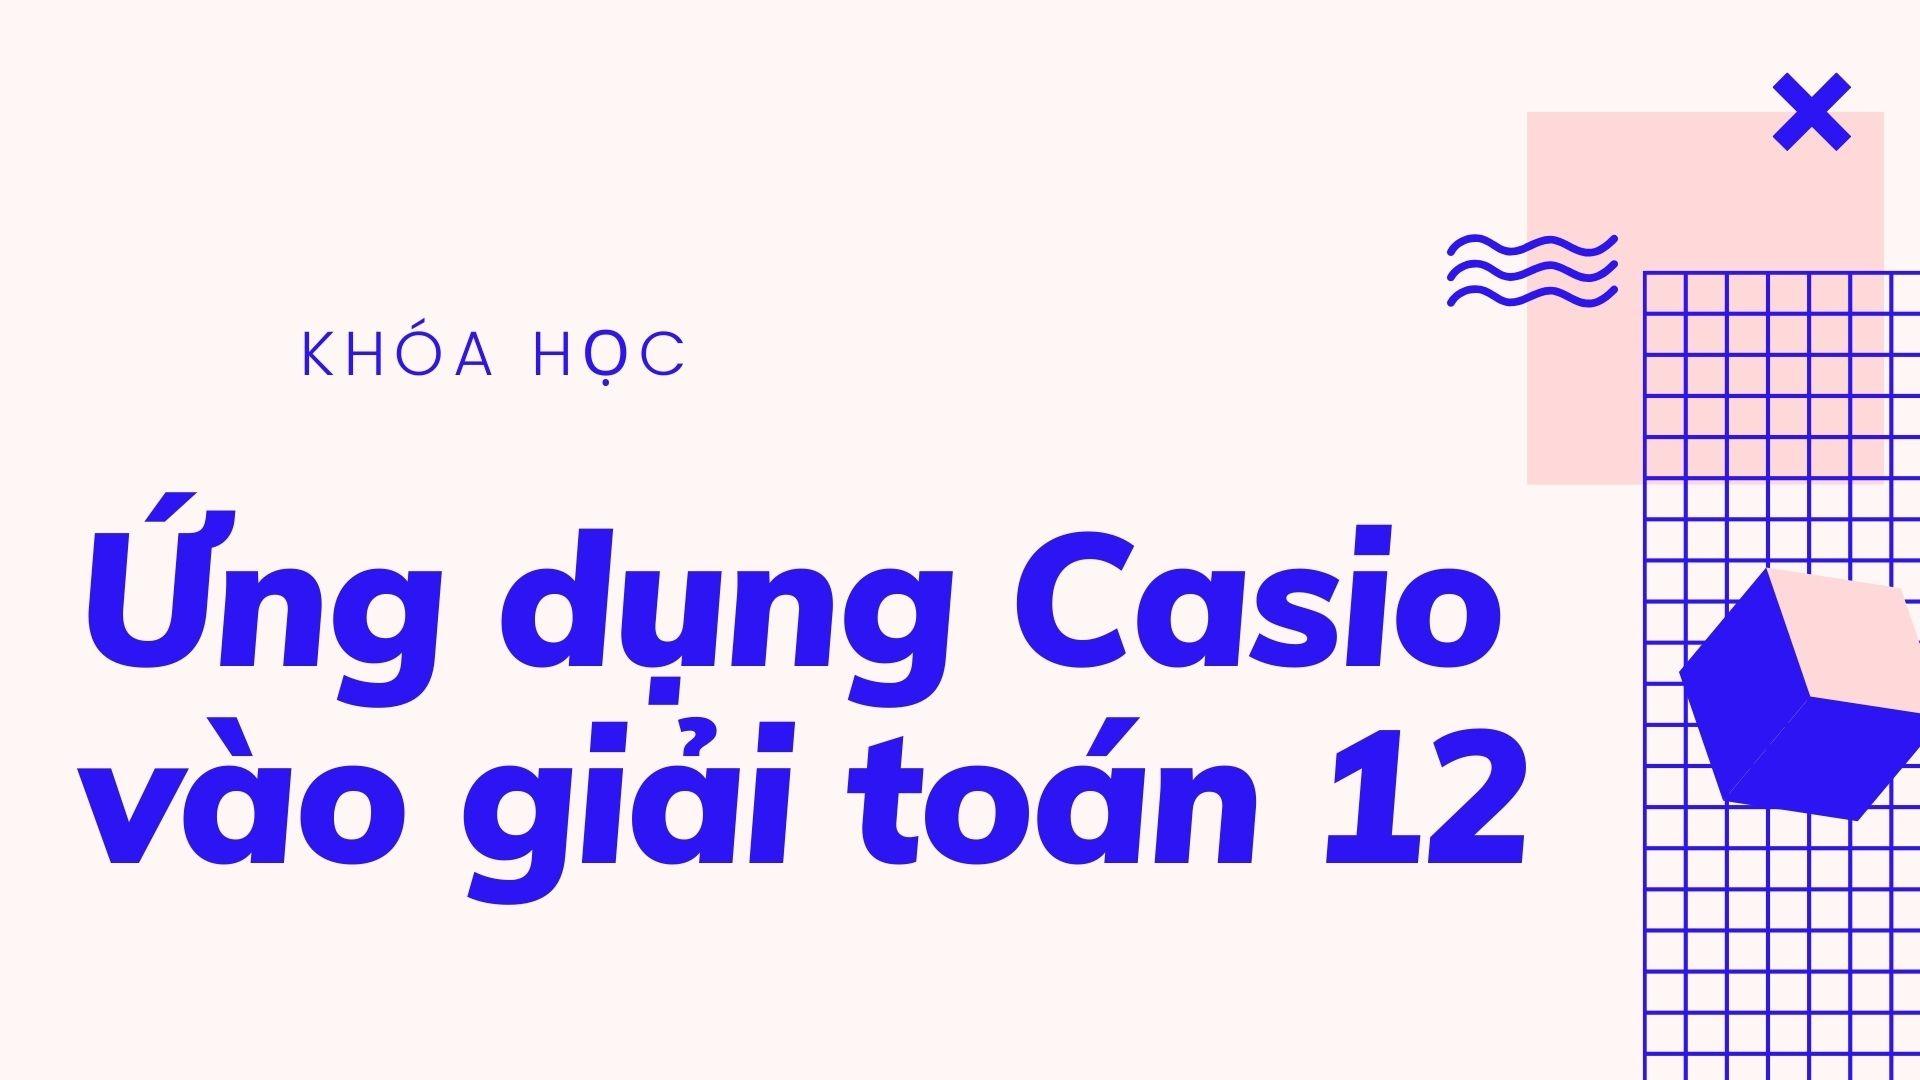 Ứng dụng Casio vào giải toán 12